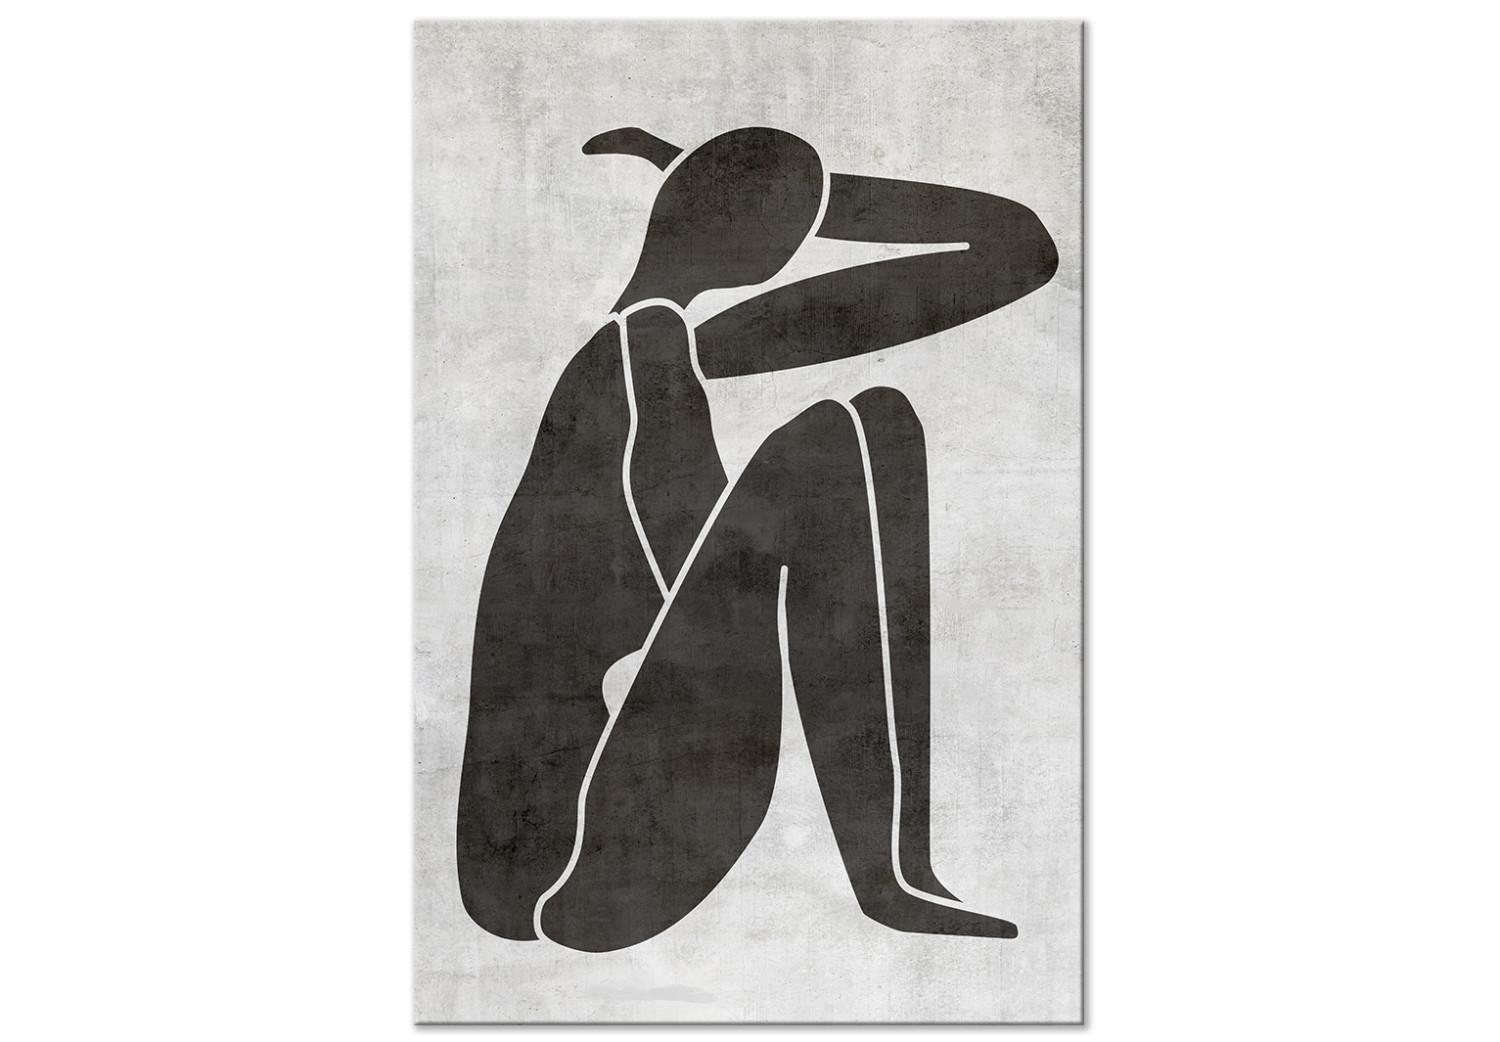 Cuadro moderno Silueta de mujer reflexiva - gráfico en blanco y negro scandi boho